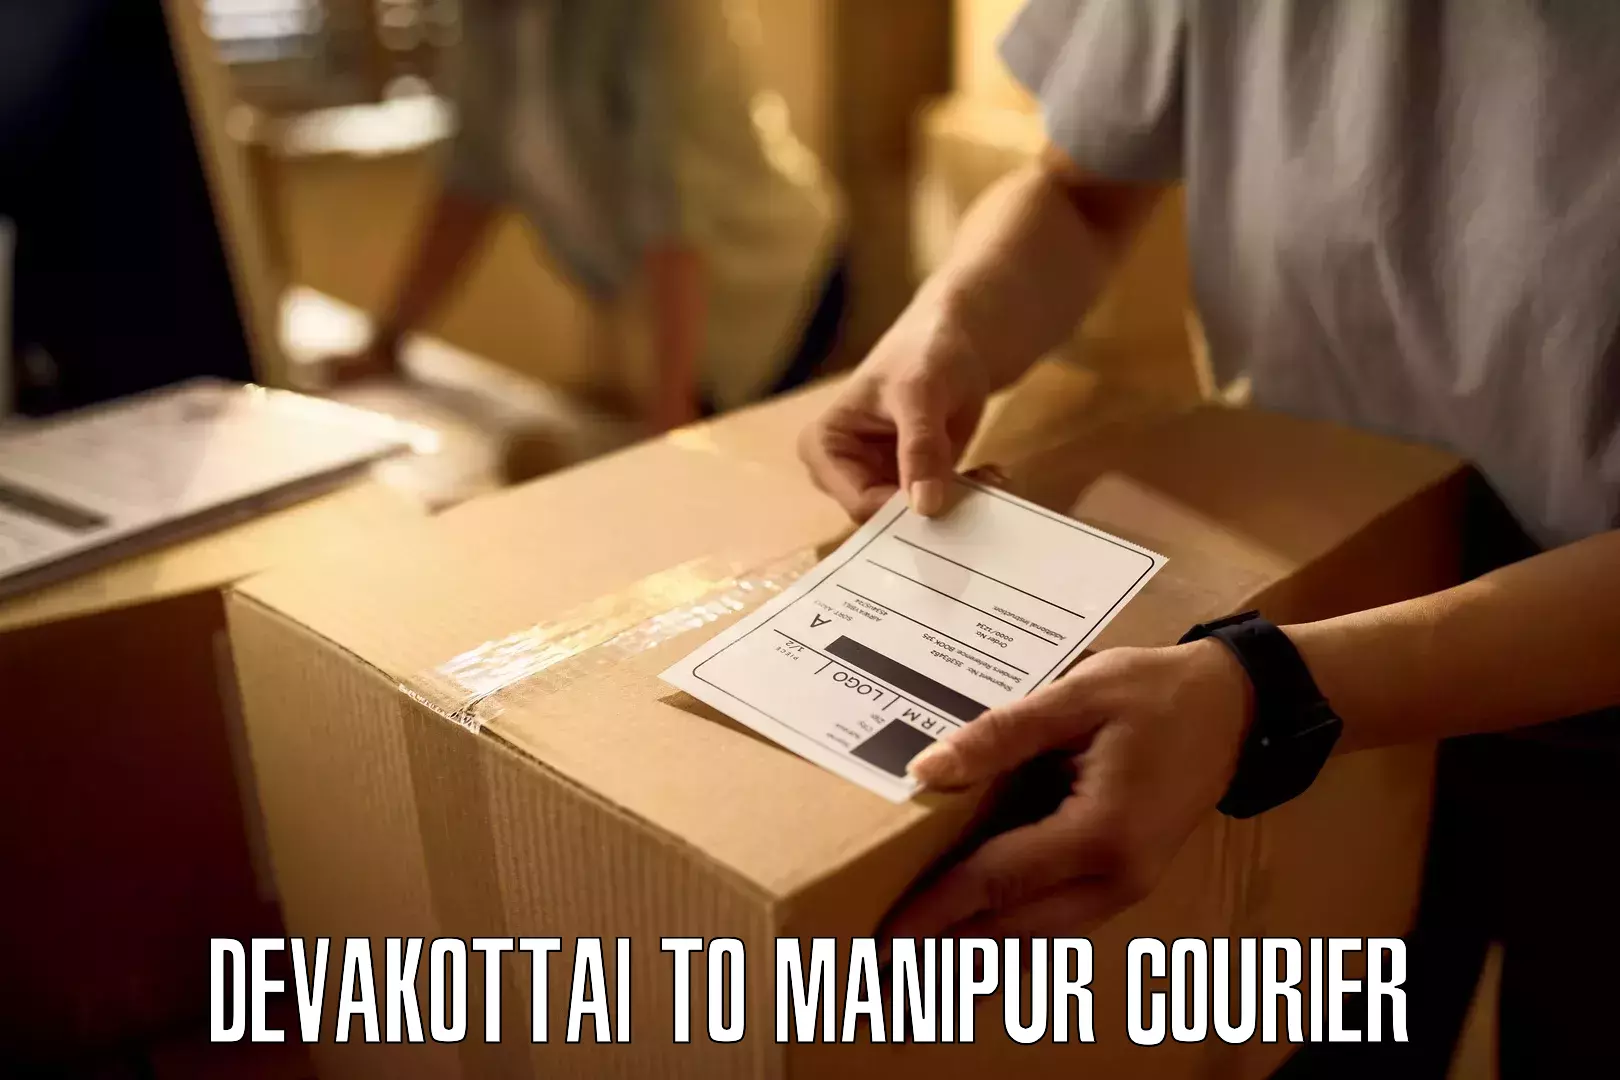 24/7 shipping services Devakottai to Manipur